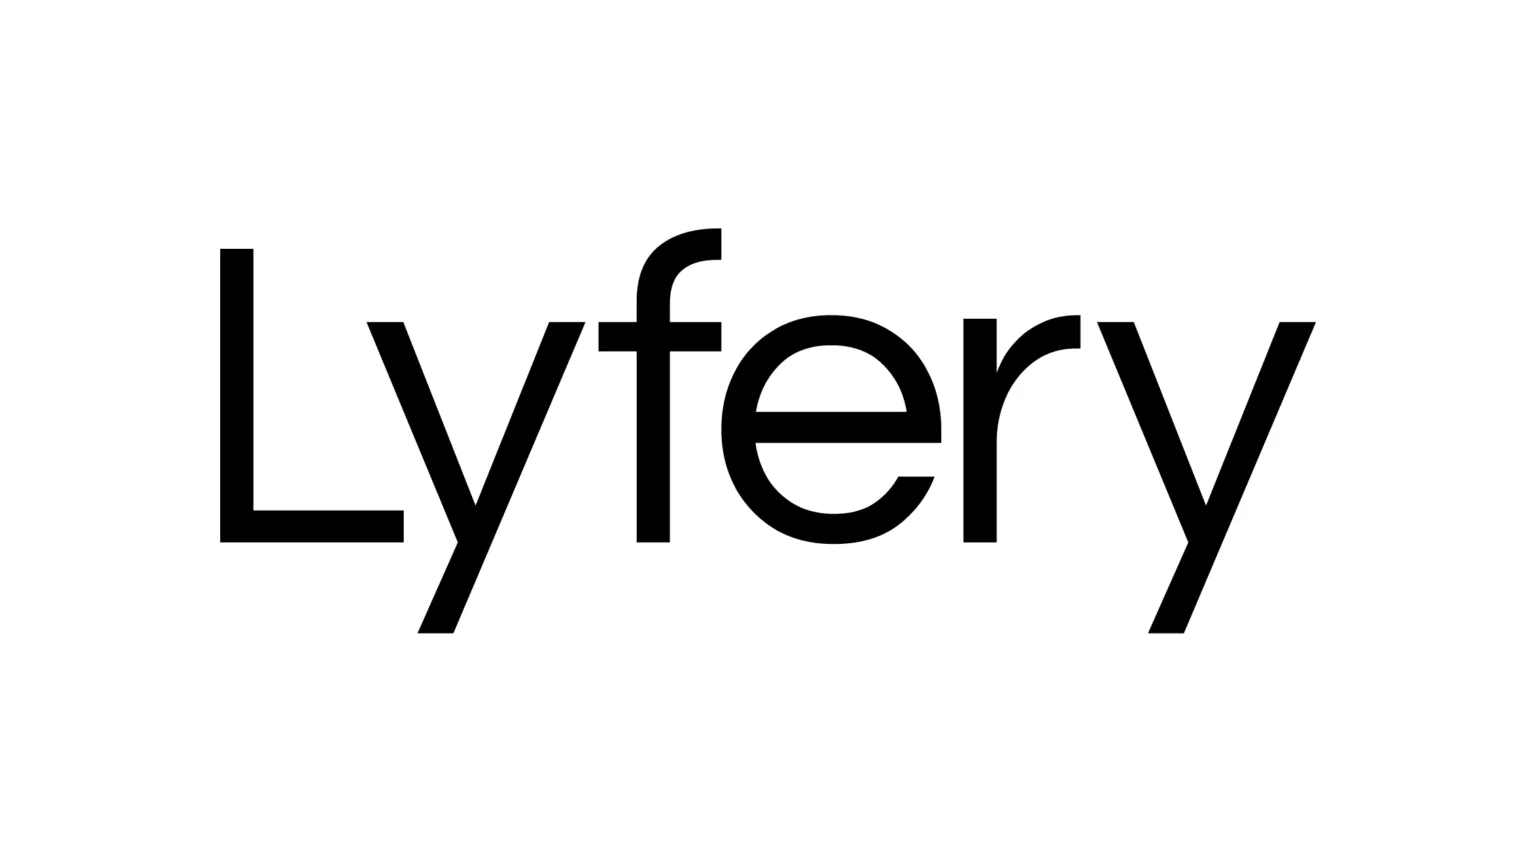 Lyfery